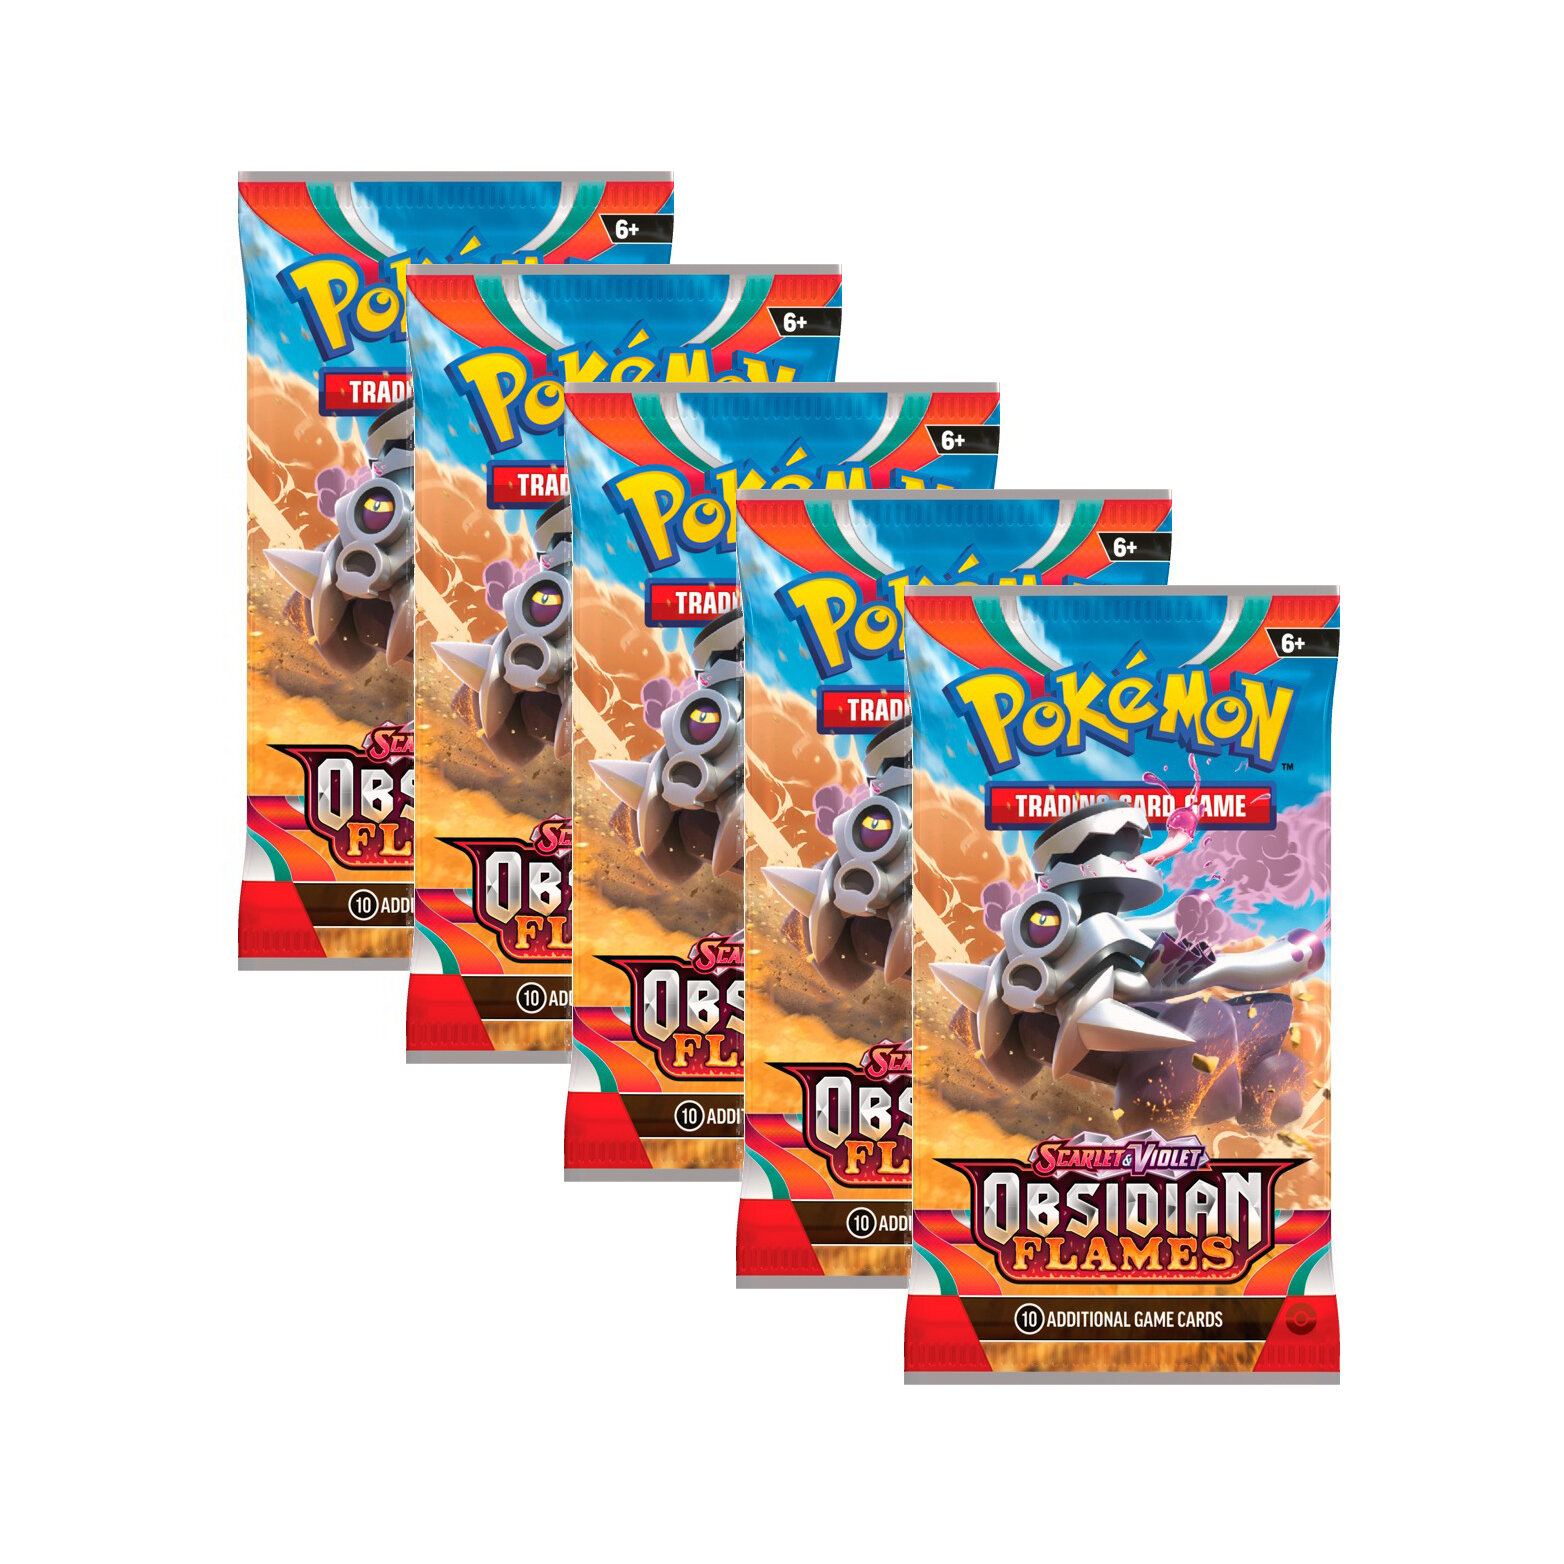 Покемон карты коллекционные: 5 бустеров Pokemon издания Obsidian Flames, на английском